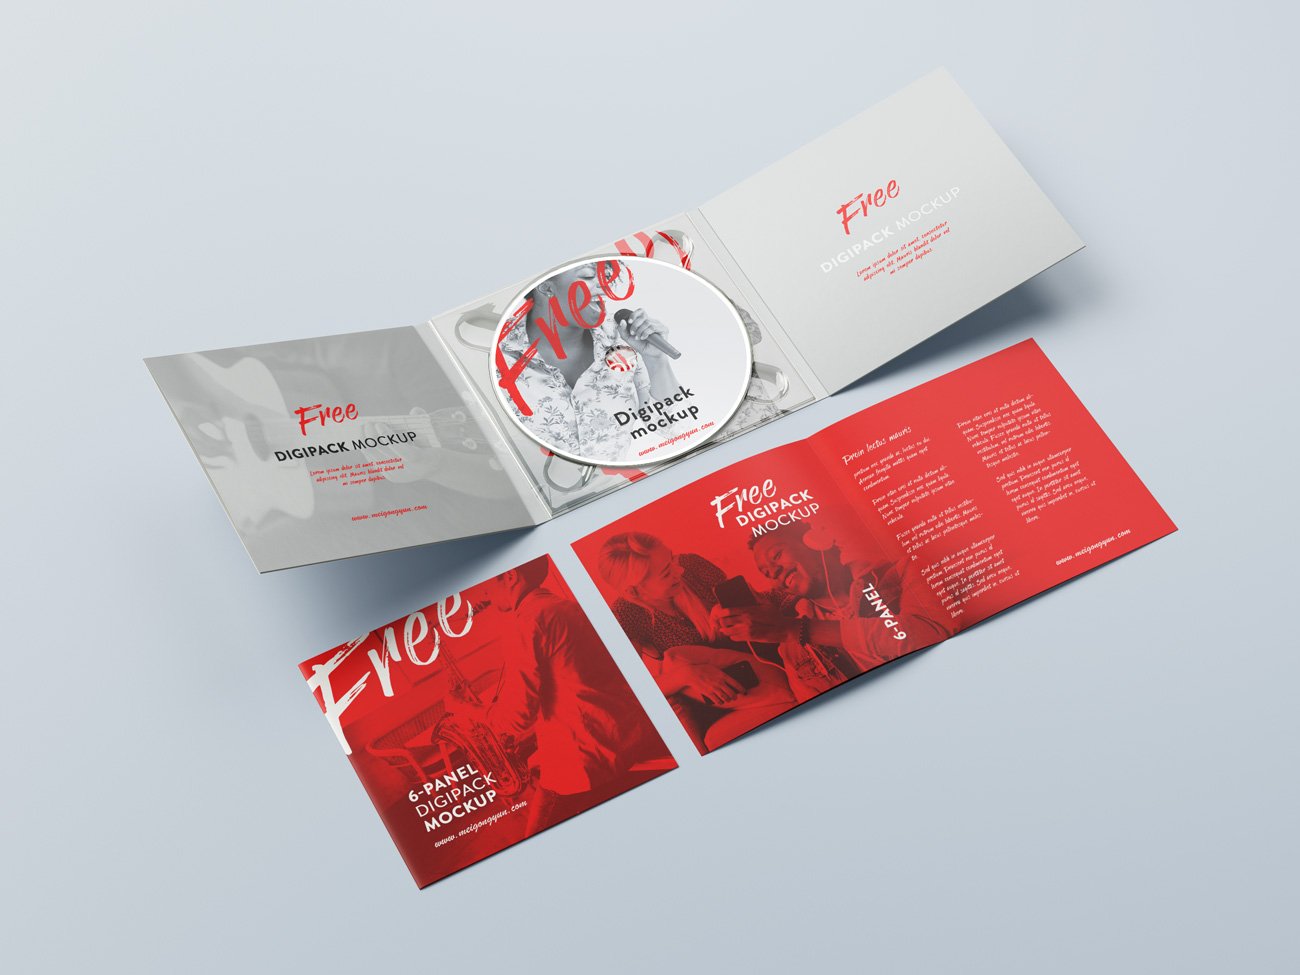 数码光盘音乐光碟CD设计品牌包装提案样机PSD模板素材 6